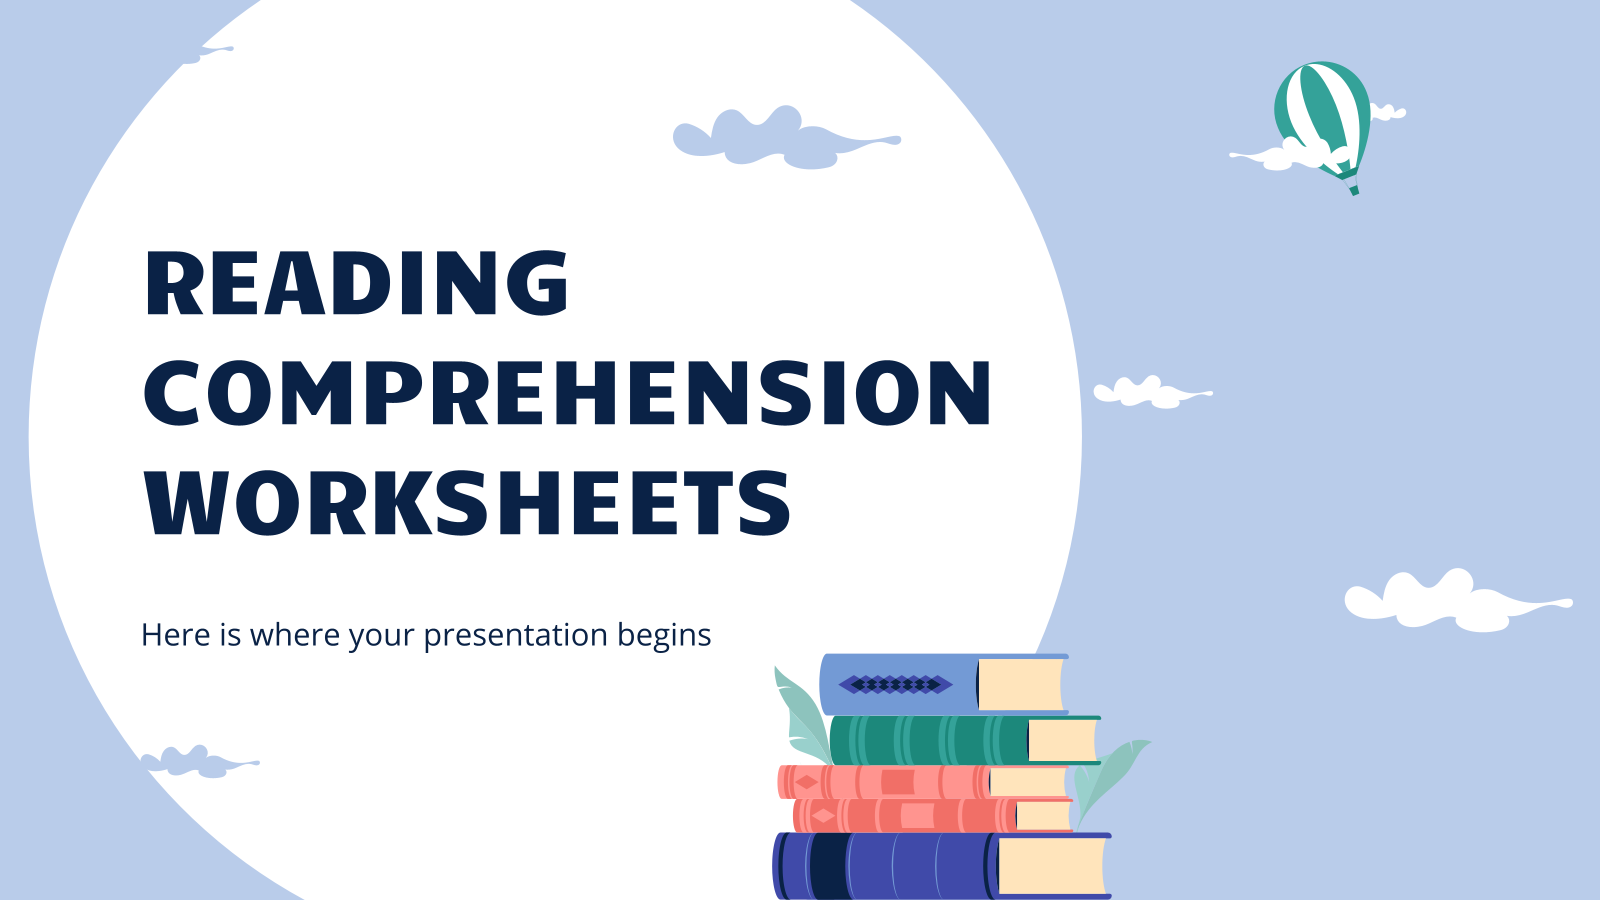 Reading Comprehension Worksheets Google Slides PPT